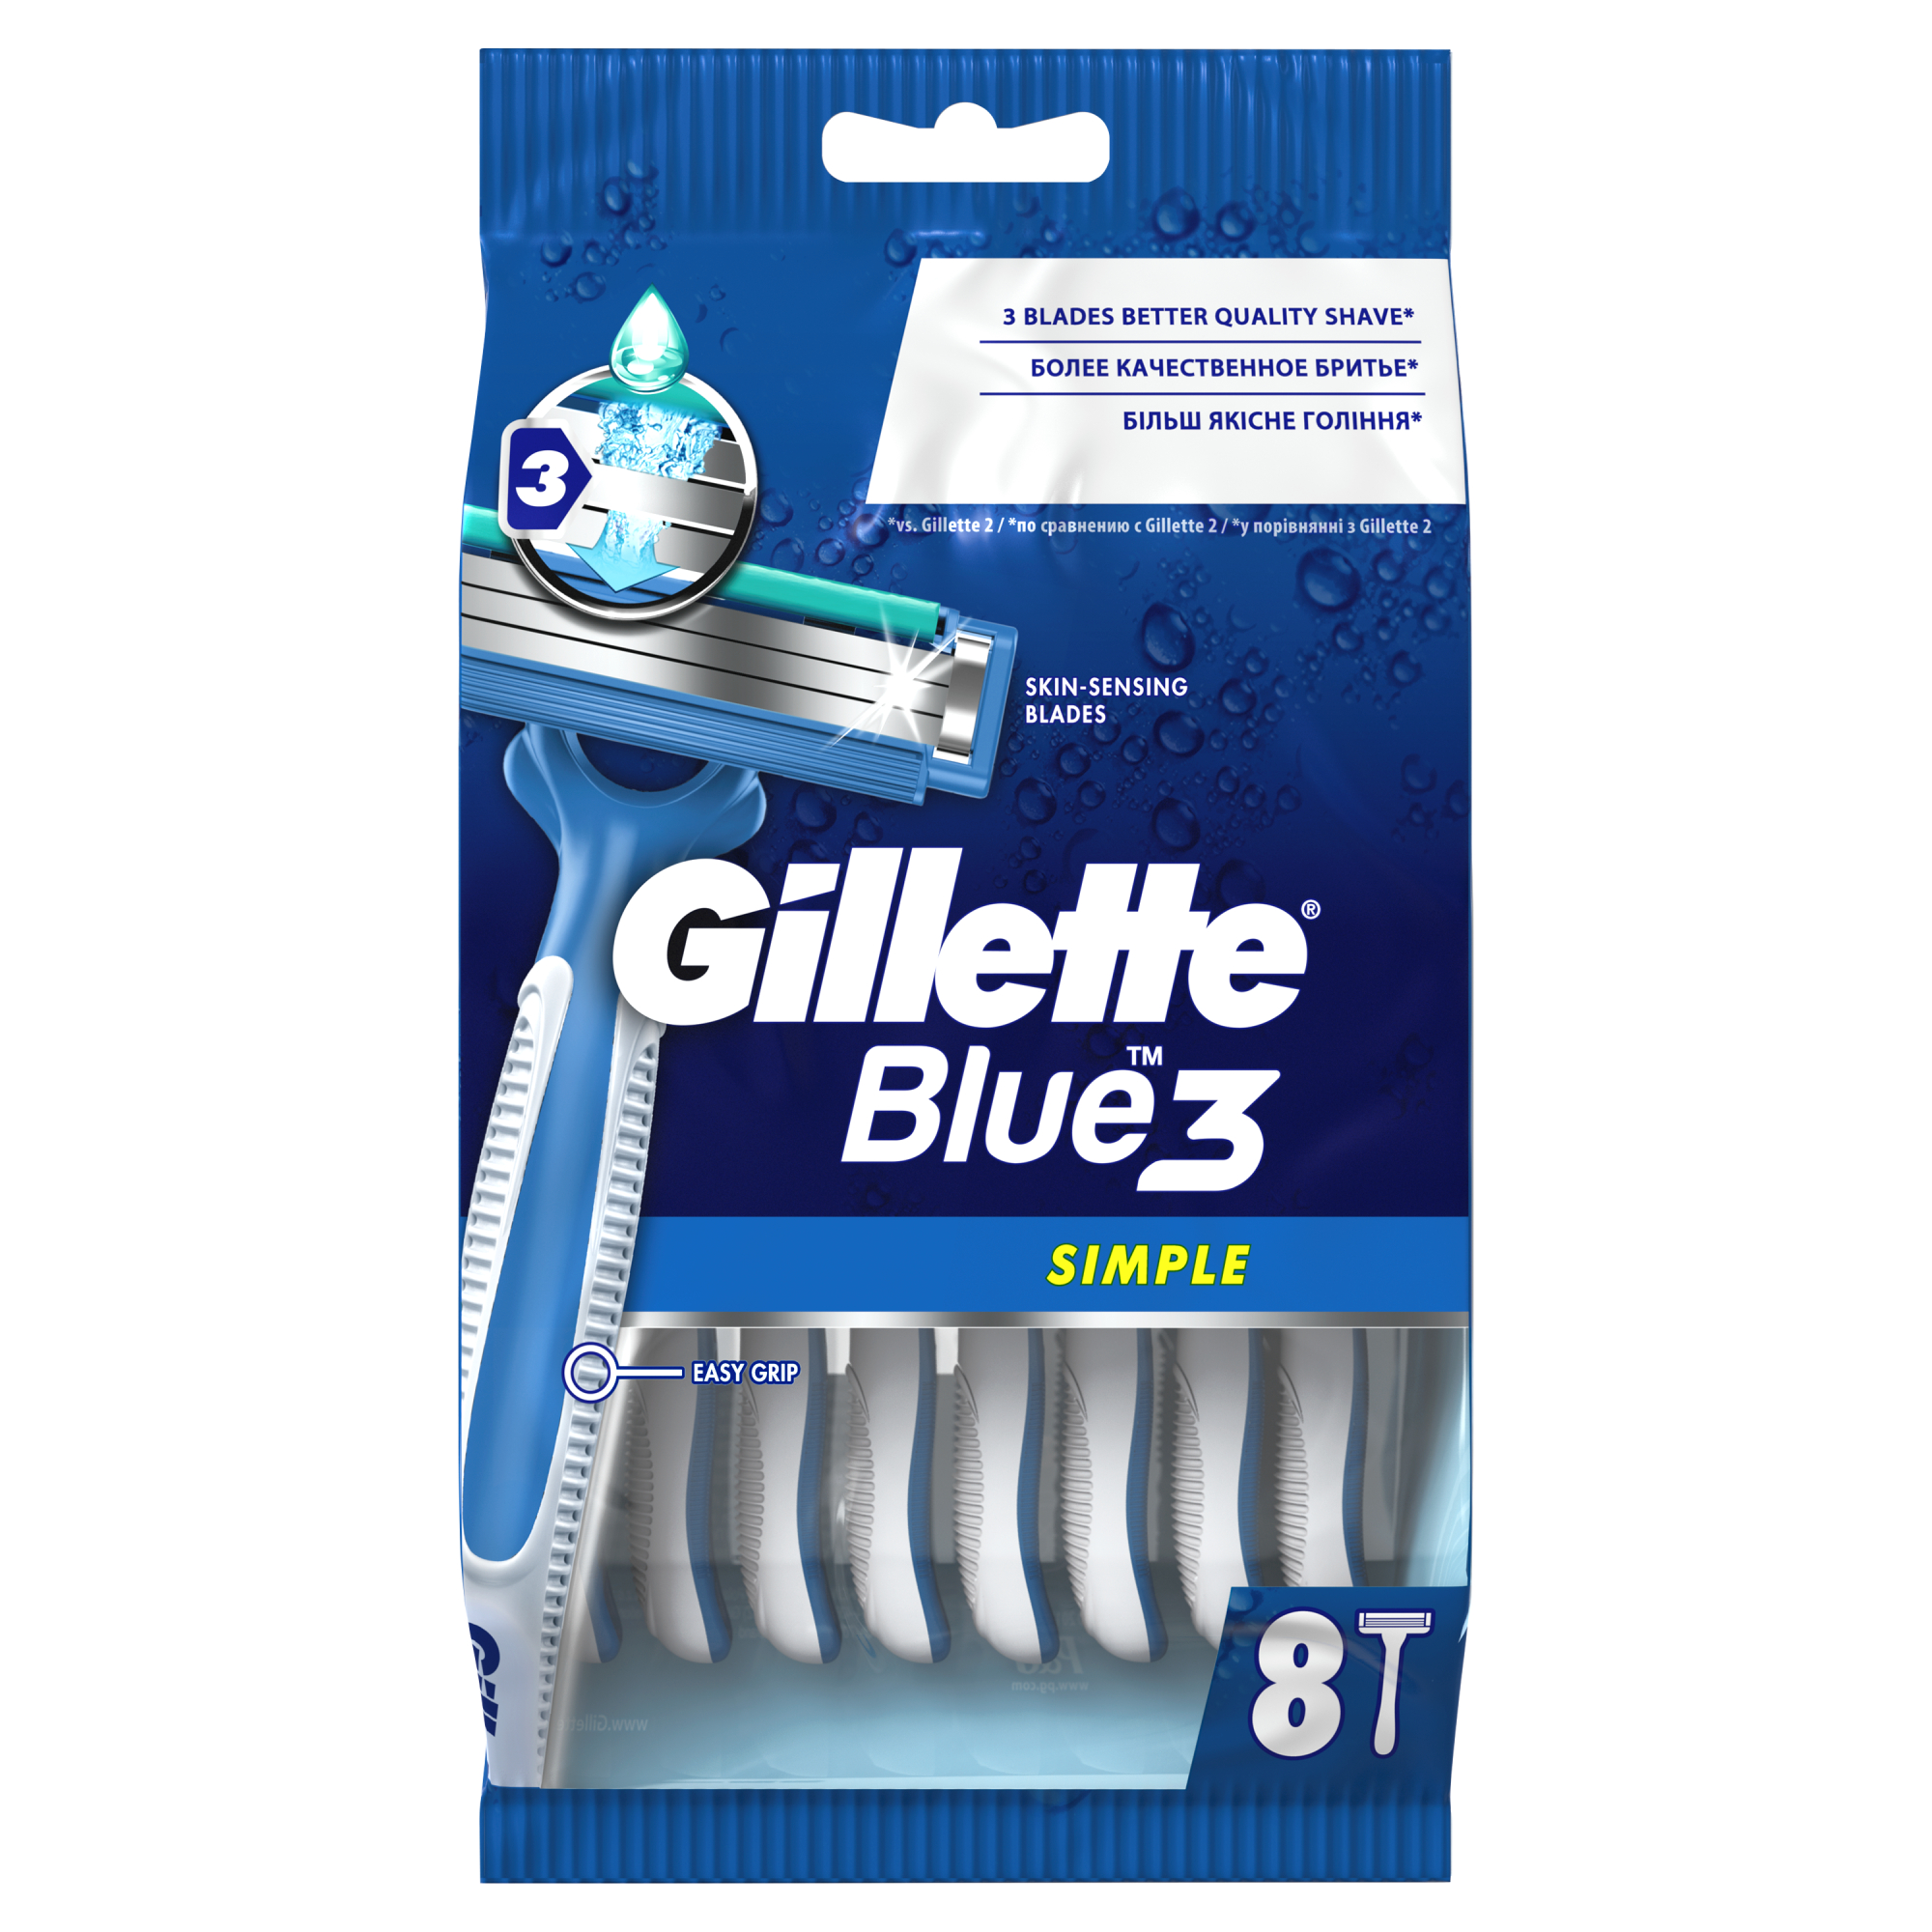 Одноразовые мужские бритвы Gillette Blue3 Simple, с 3 лезвиями, 8, фиксированная головка одноразовые мужские бритвы gillette blue3 simple с 3 лезвиями 8 фиксированная головка